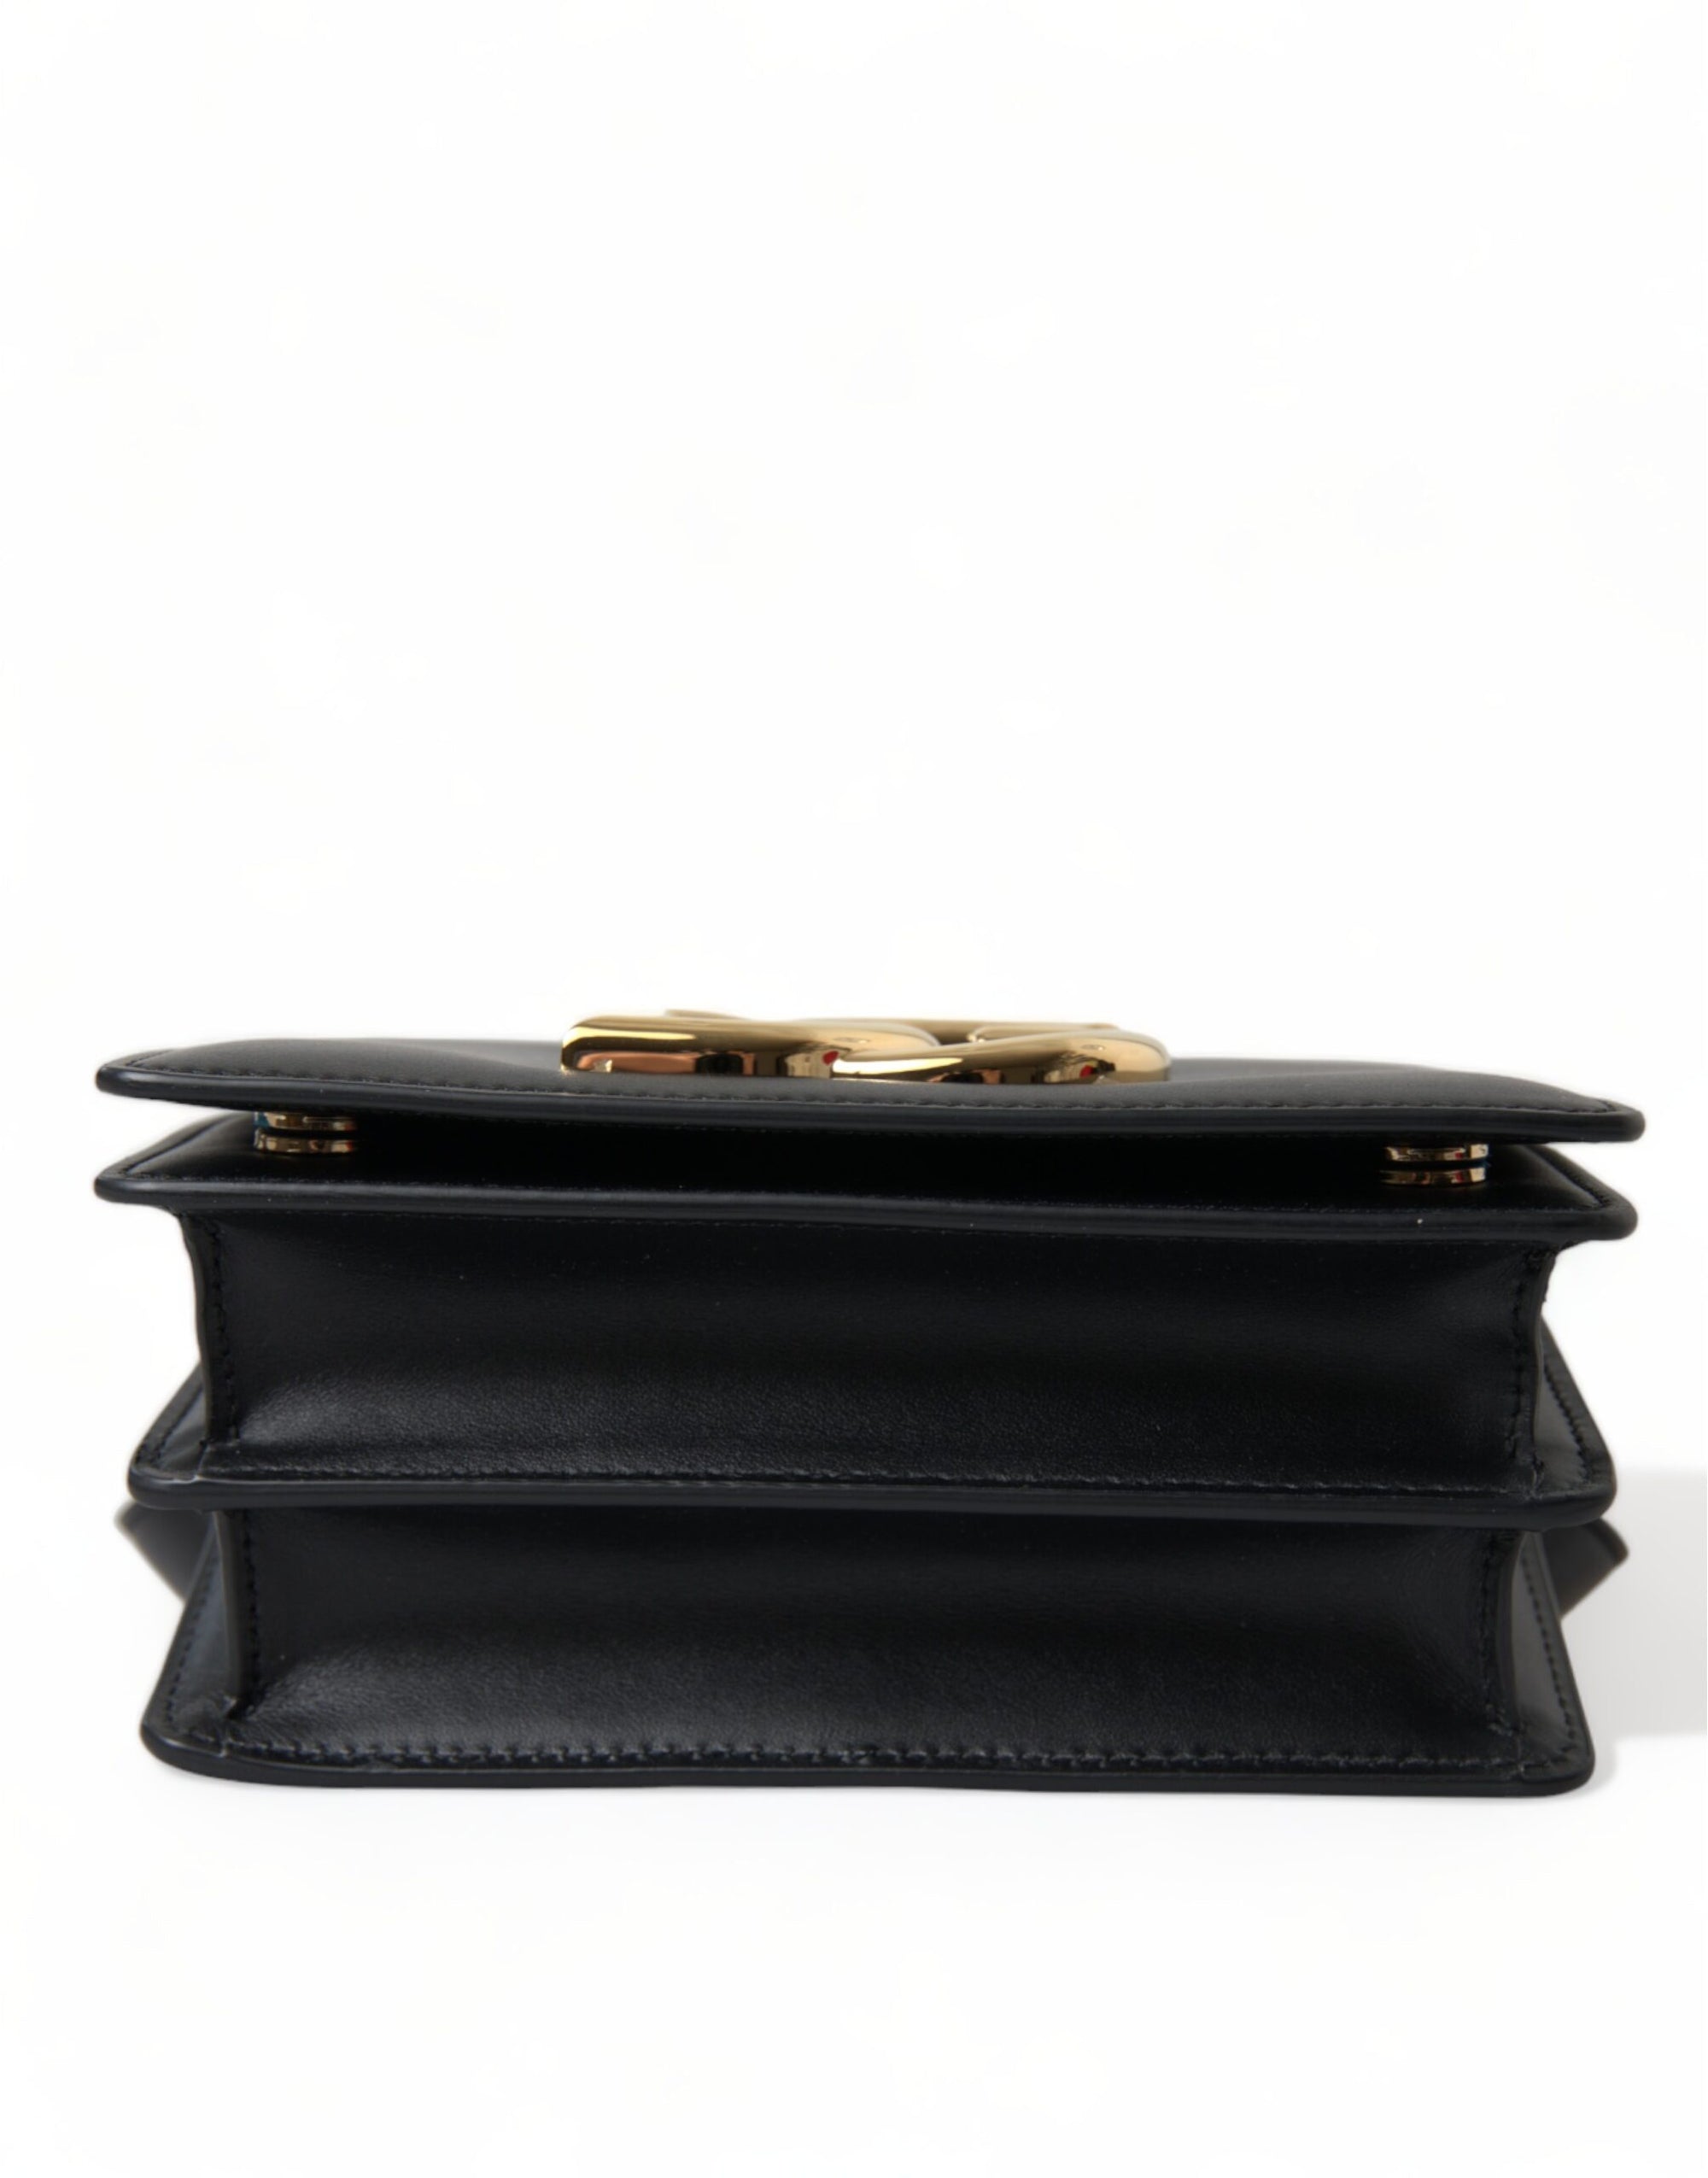 Elegant Black Leather Belt Bag with Gold Accents